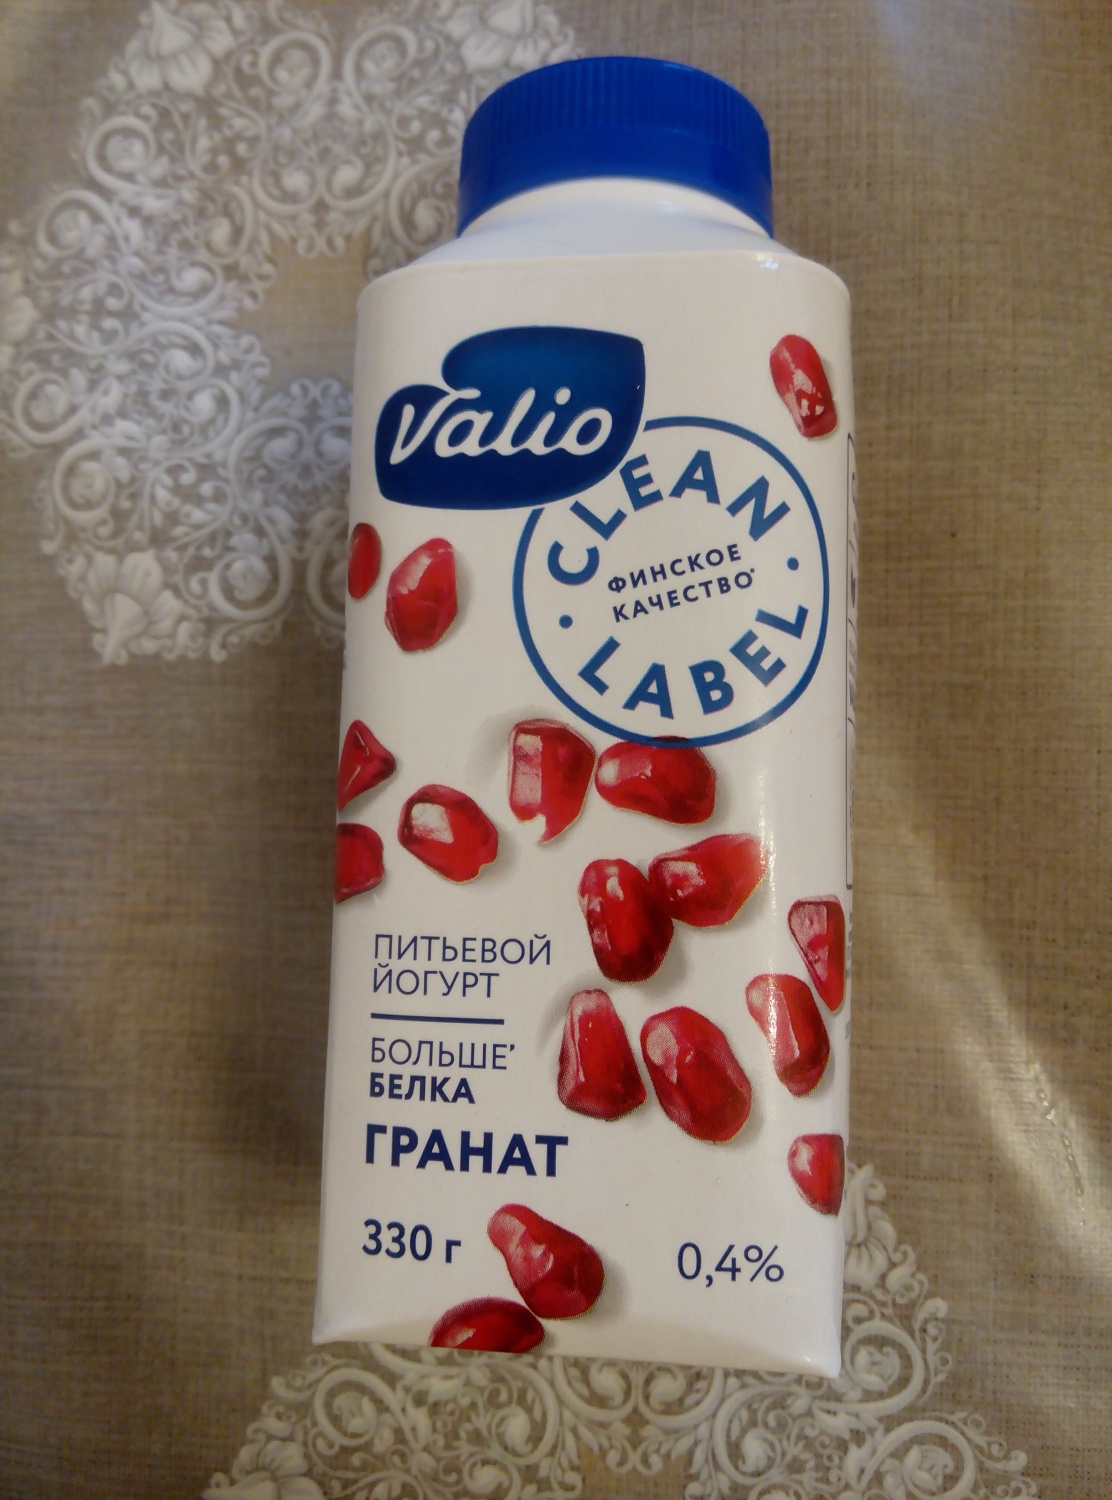 Йогурт питьевой Valio Clean Label с наполнителем "Гранат" 0,4% фото